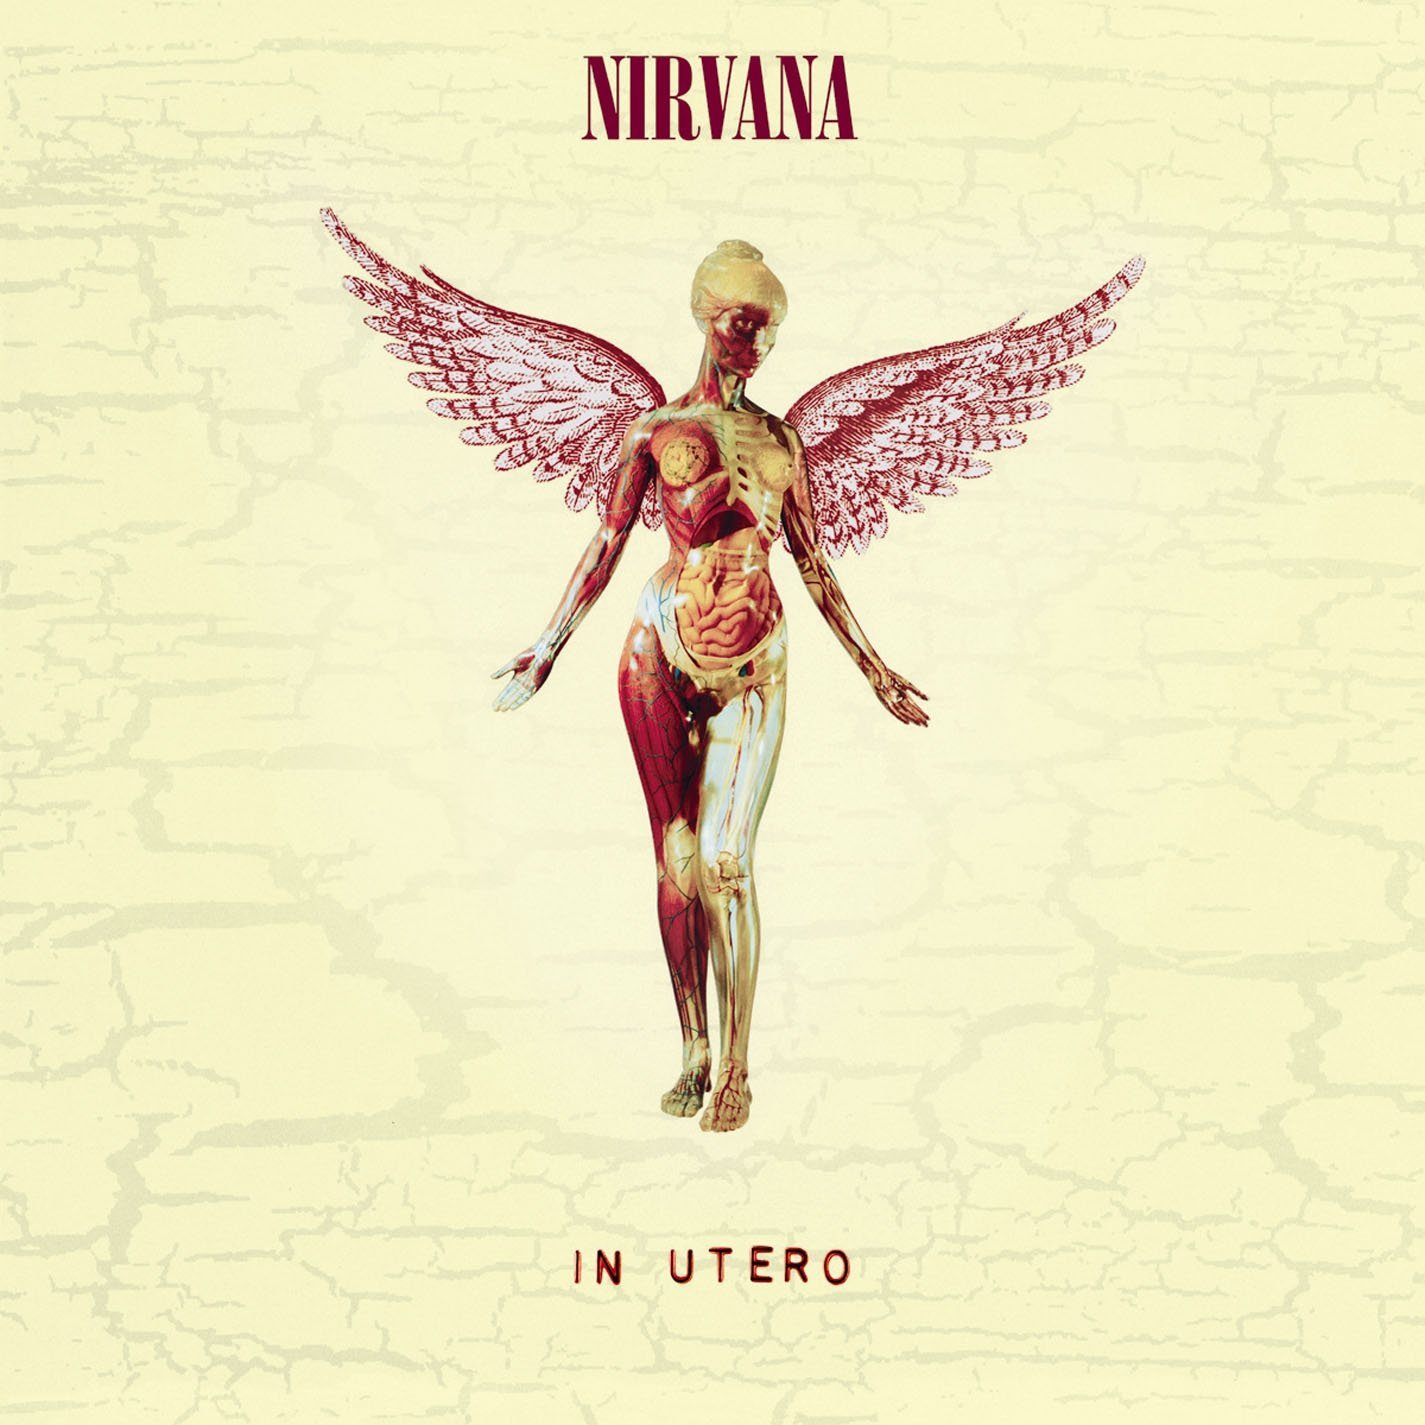 The album cover of the Nirvana album, In Utero.